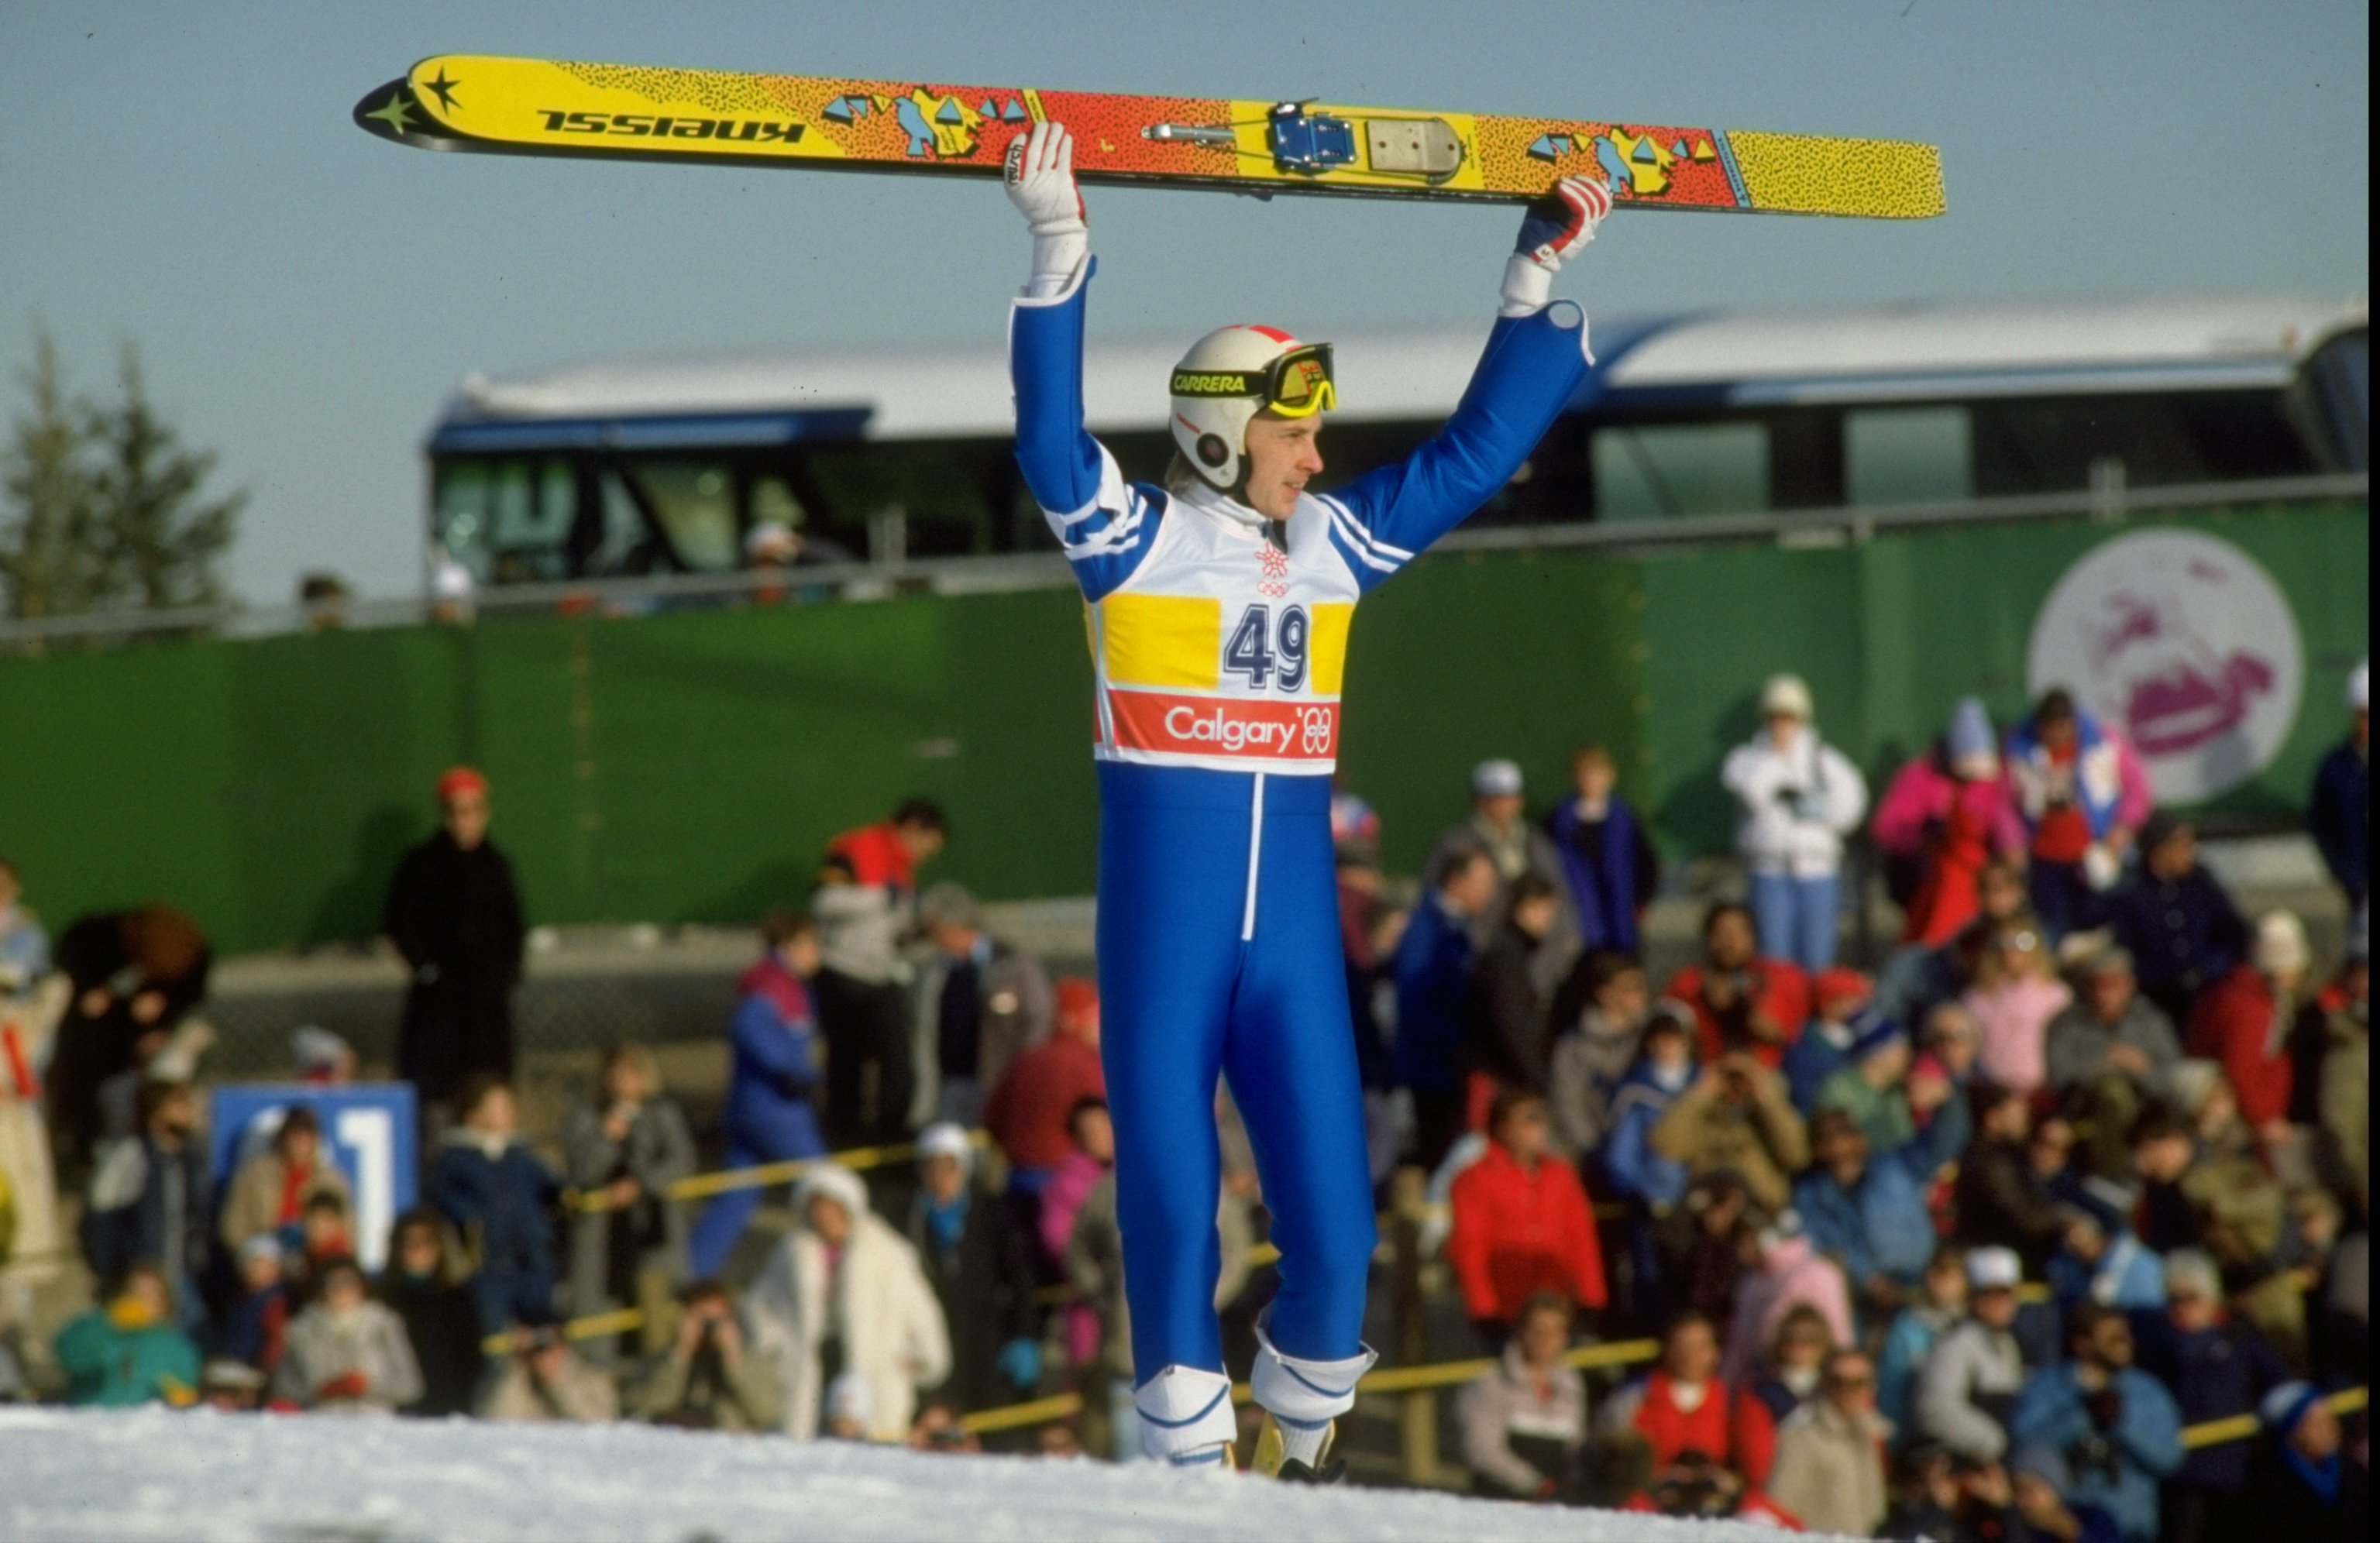 23 febbraio 1988: il finlandese Matti Nykanen tiene alto il cielo dopo la gara di salto con gli sci da 90 metri ai Giochi olimpici invernali del 1988 a Calgary, in Canada. Nykanen vinse la medaglia d'oro con un salto di 224 metri. \ Credito obbligatorio: Allsport UK /Allsport